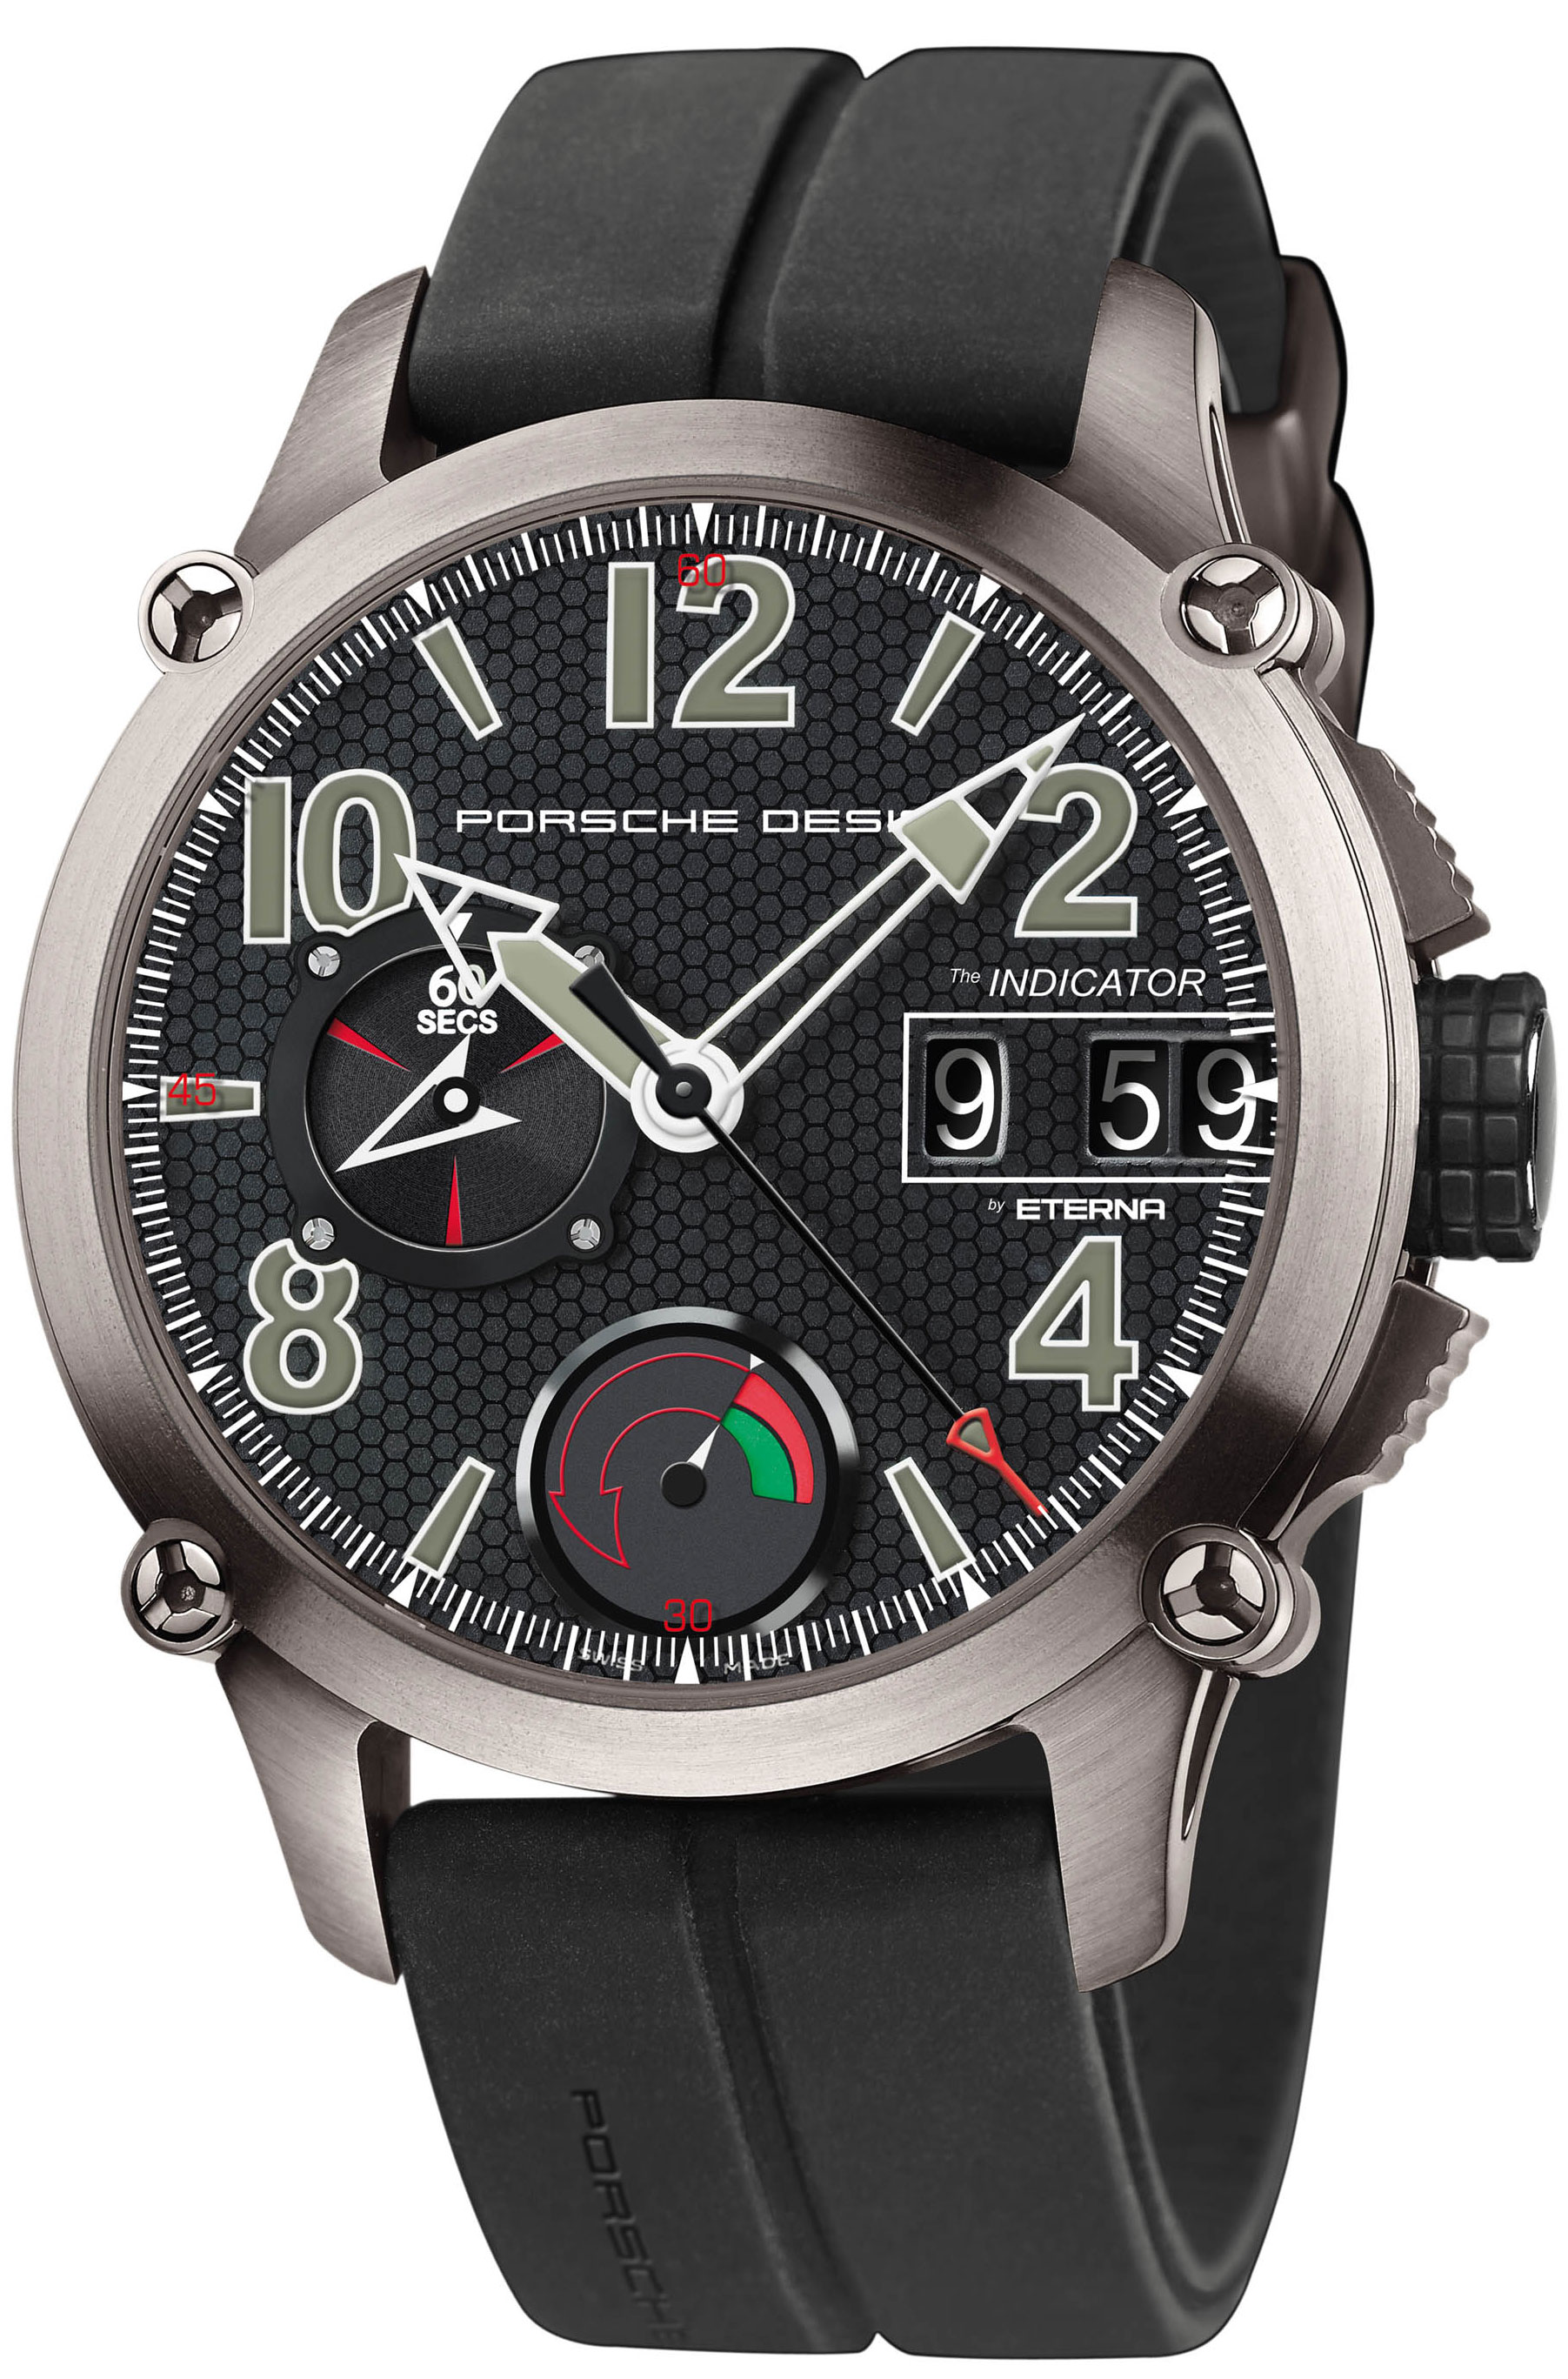 Review buy Porsche Design Indicator Men's Watch 6910.10.40.1149